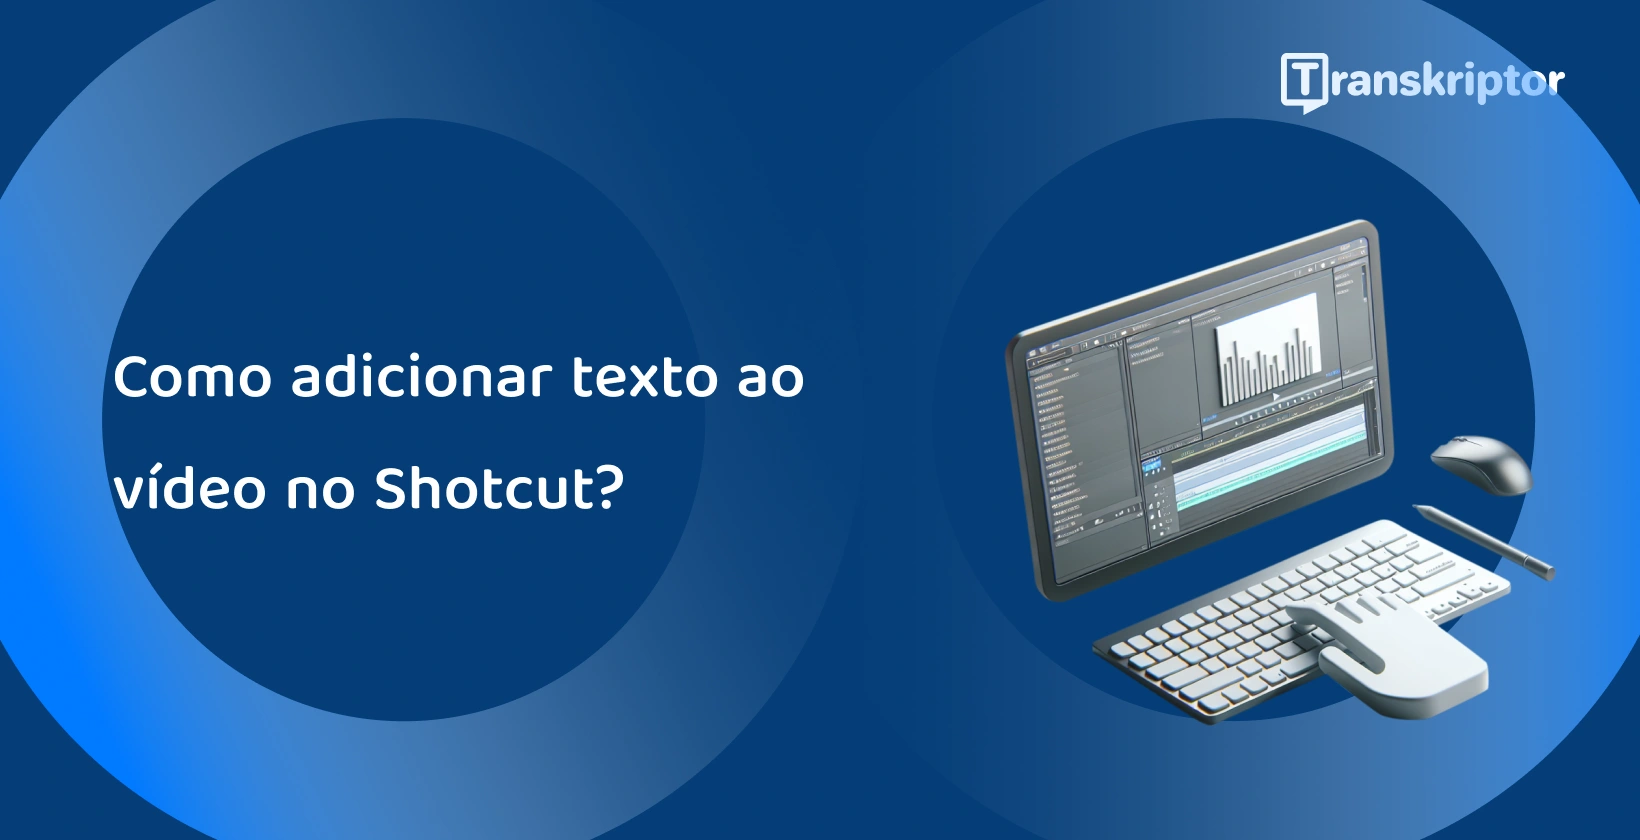 Shotcut software de edição de vídeo em um monitor com forma de onda e ferramentas de texto, para adicionar legendas e títulos aos vídeos.